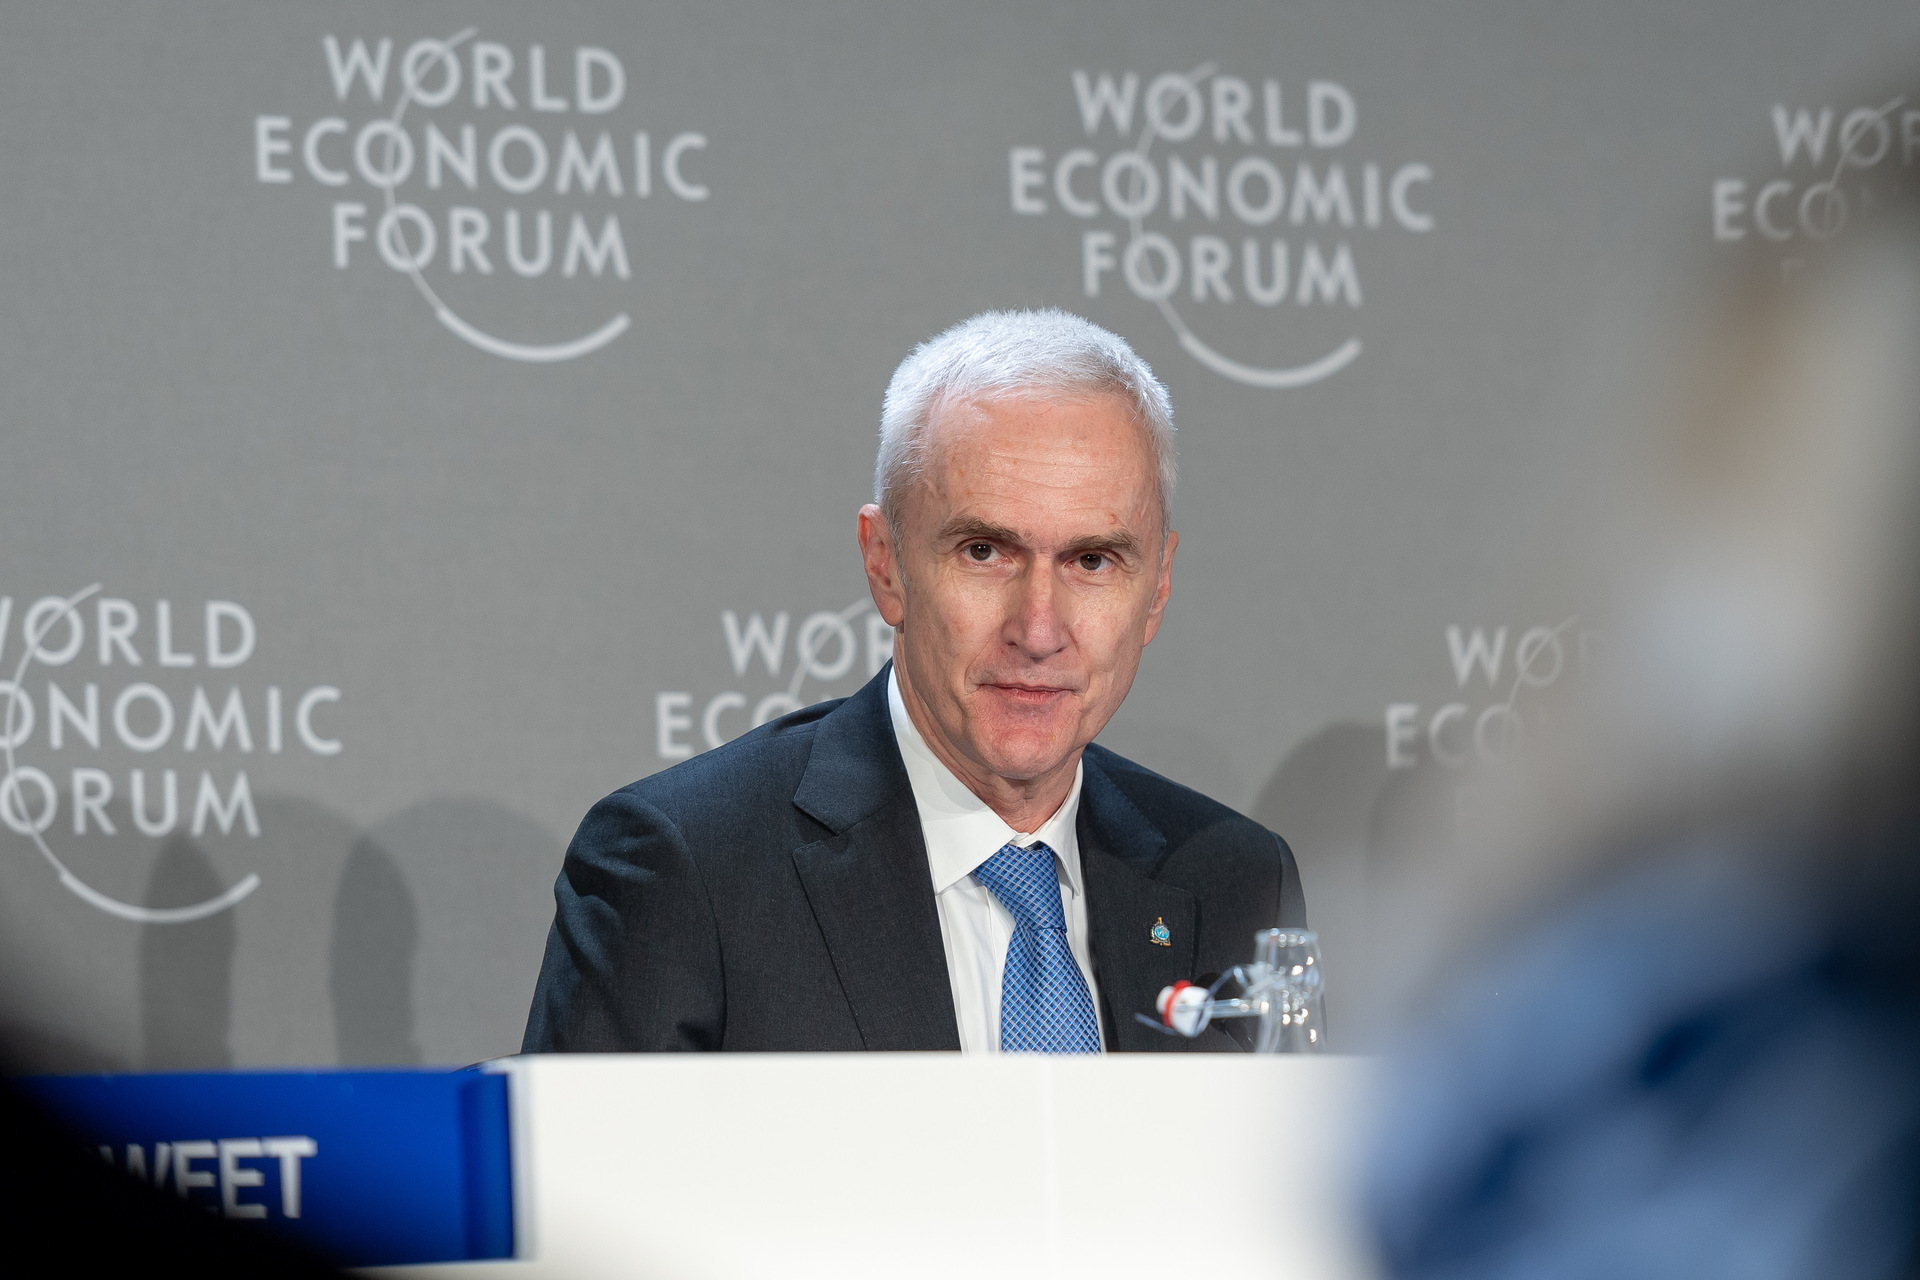 Ciberseguridad: la presentación de la edición 2023 de "Global Cybersecurity Outlook" en el Foro Económico Mundial de Davos: la intervención de Jürgen Stock, Secretario General de INTERPOL